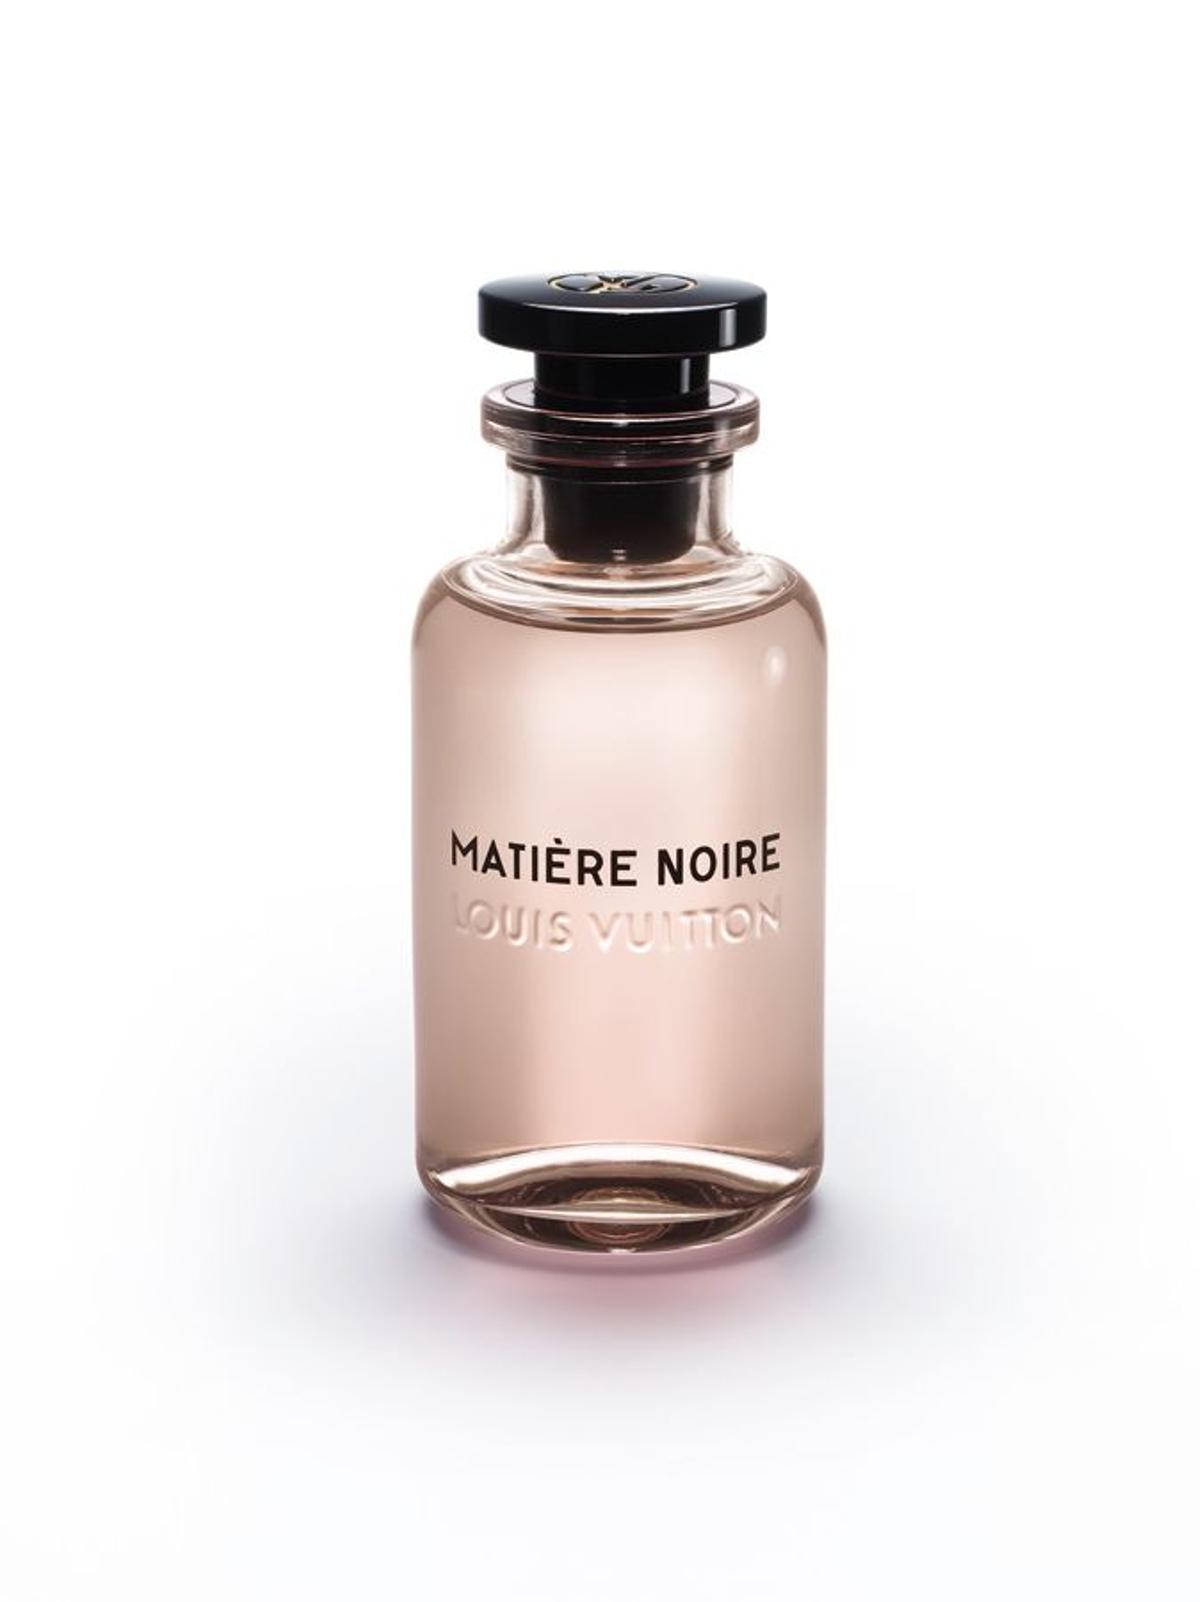 Descubriendo Les Parfums Louis Vuitton